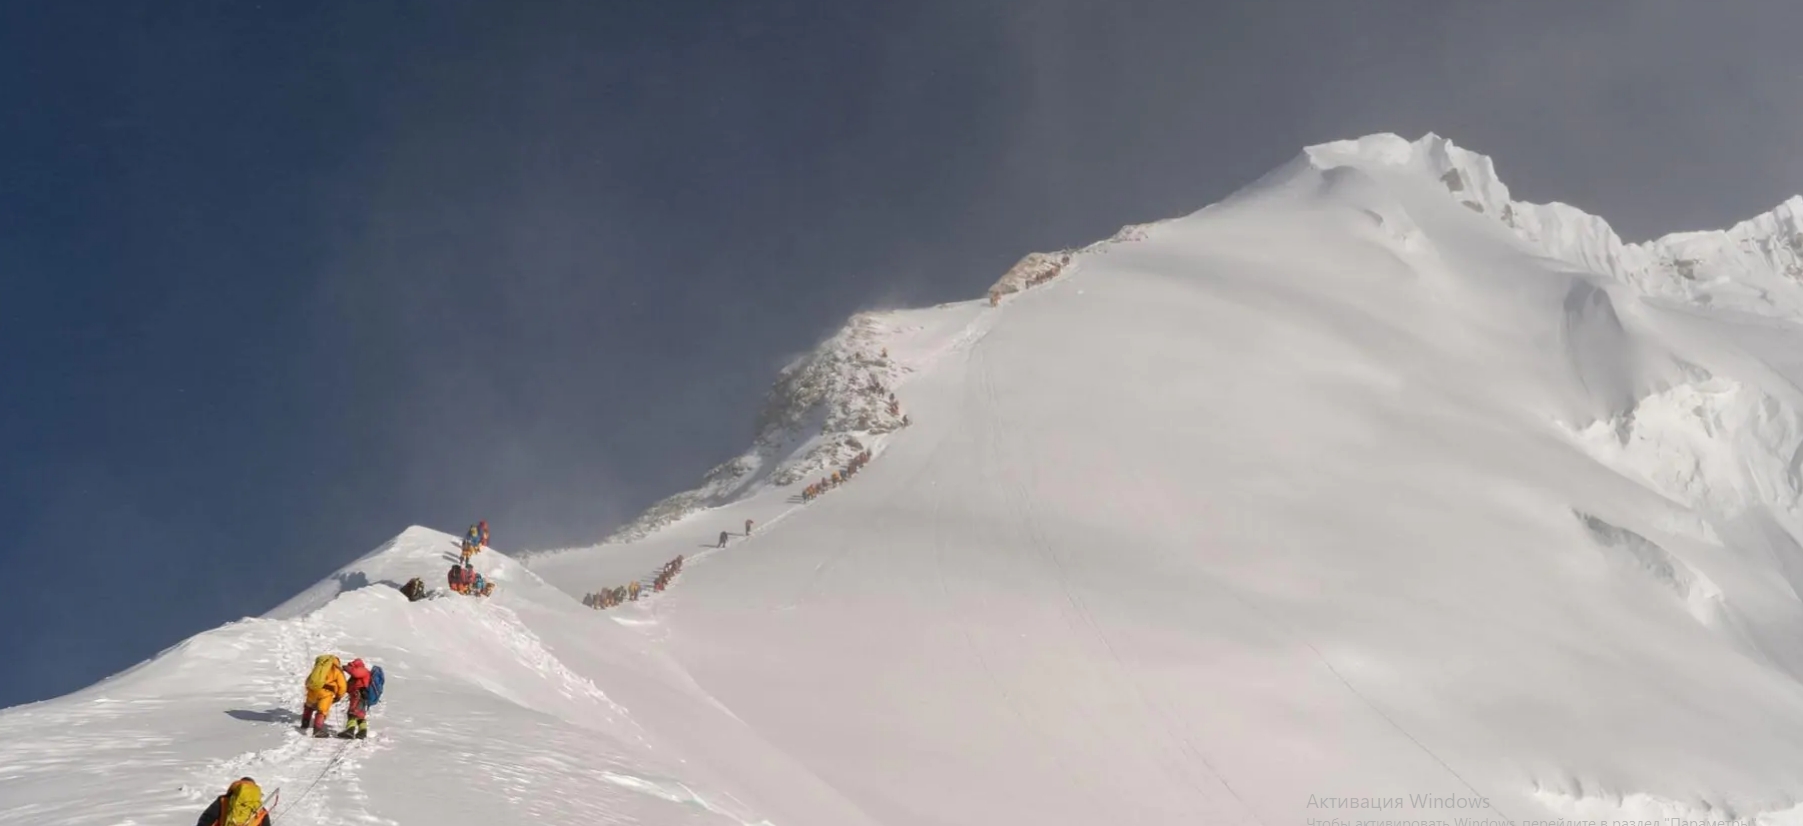 Альпинисты ждут в очереди в восхождении на Эверест в мае 2019 года. <br>Поток людей, ежегодно поднимающихся на вершину, неосознанно оставляет свой след на горе в виде крошечных следов пластика, которые выпадают из синтетических материалов, обычно используемых в верхней одежде. <br>Фото MARK FISHER, NATIONAL GEOGRAPHIC.